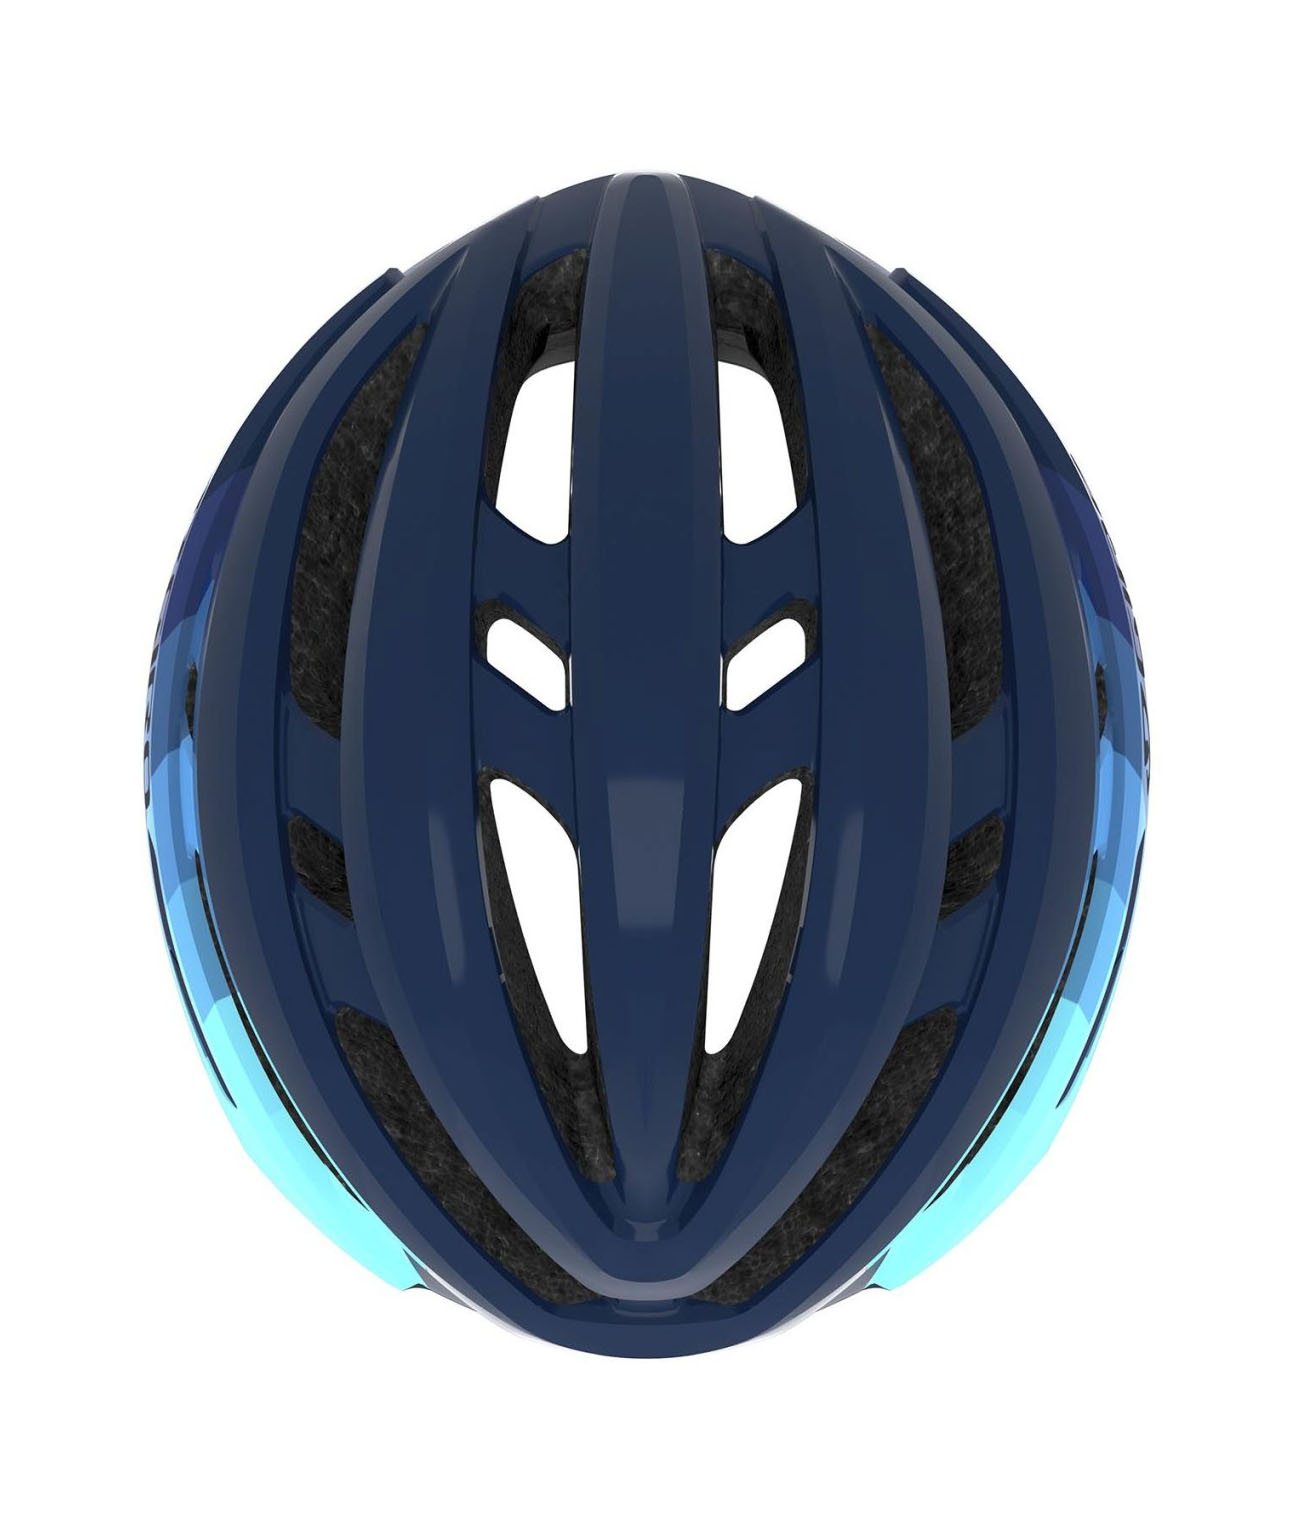 Шлем Giro Agilis, размер M (55-59см), матовый синий/голубой фото 3